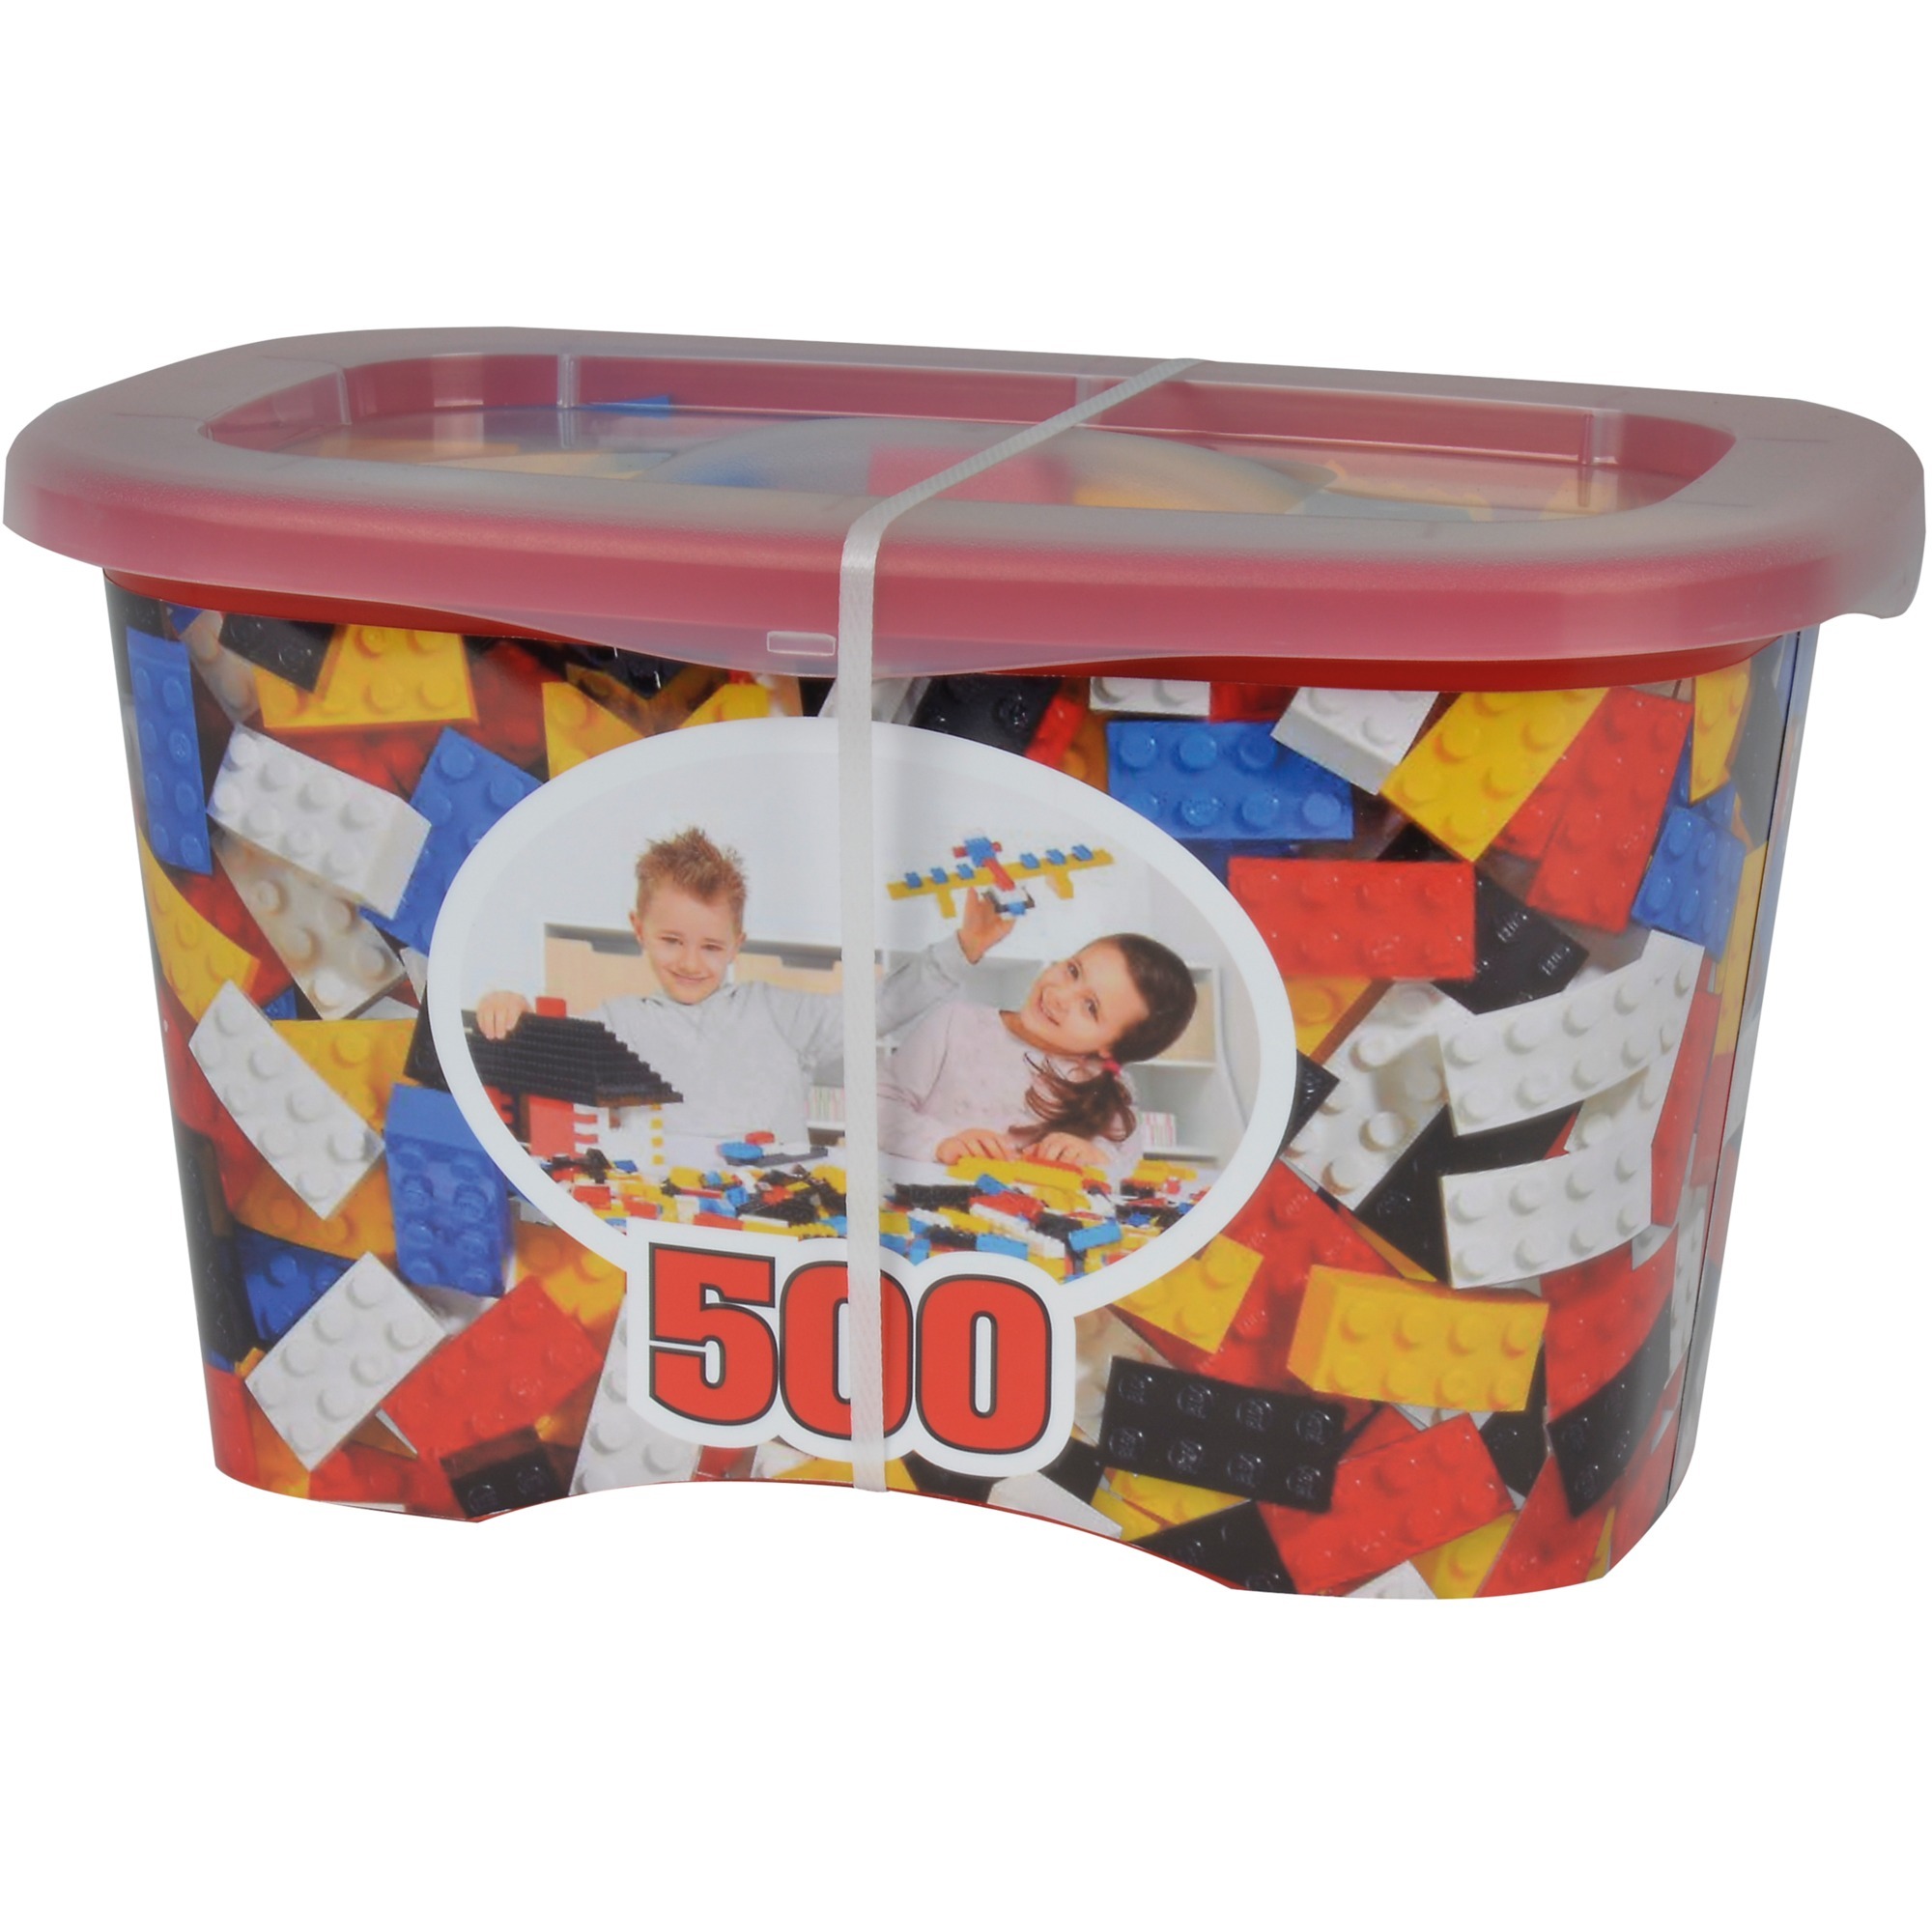 Image of Alternate - Blox Container 500 8er Steine, Konstruktionsspielzeug online einkaufen bei Alternate